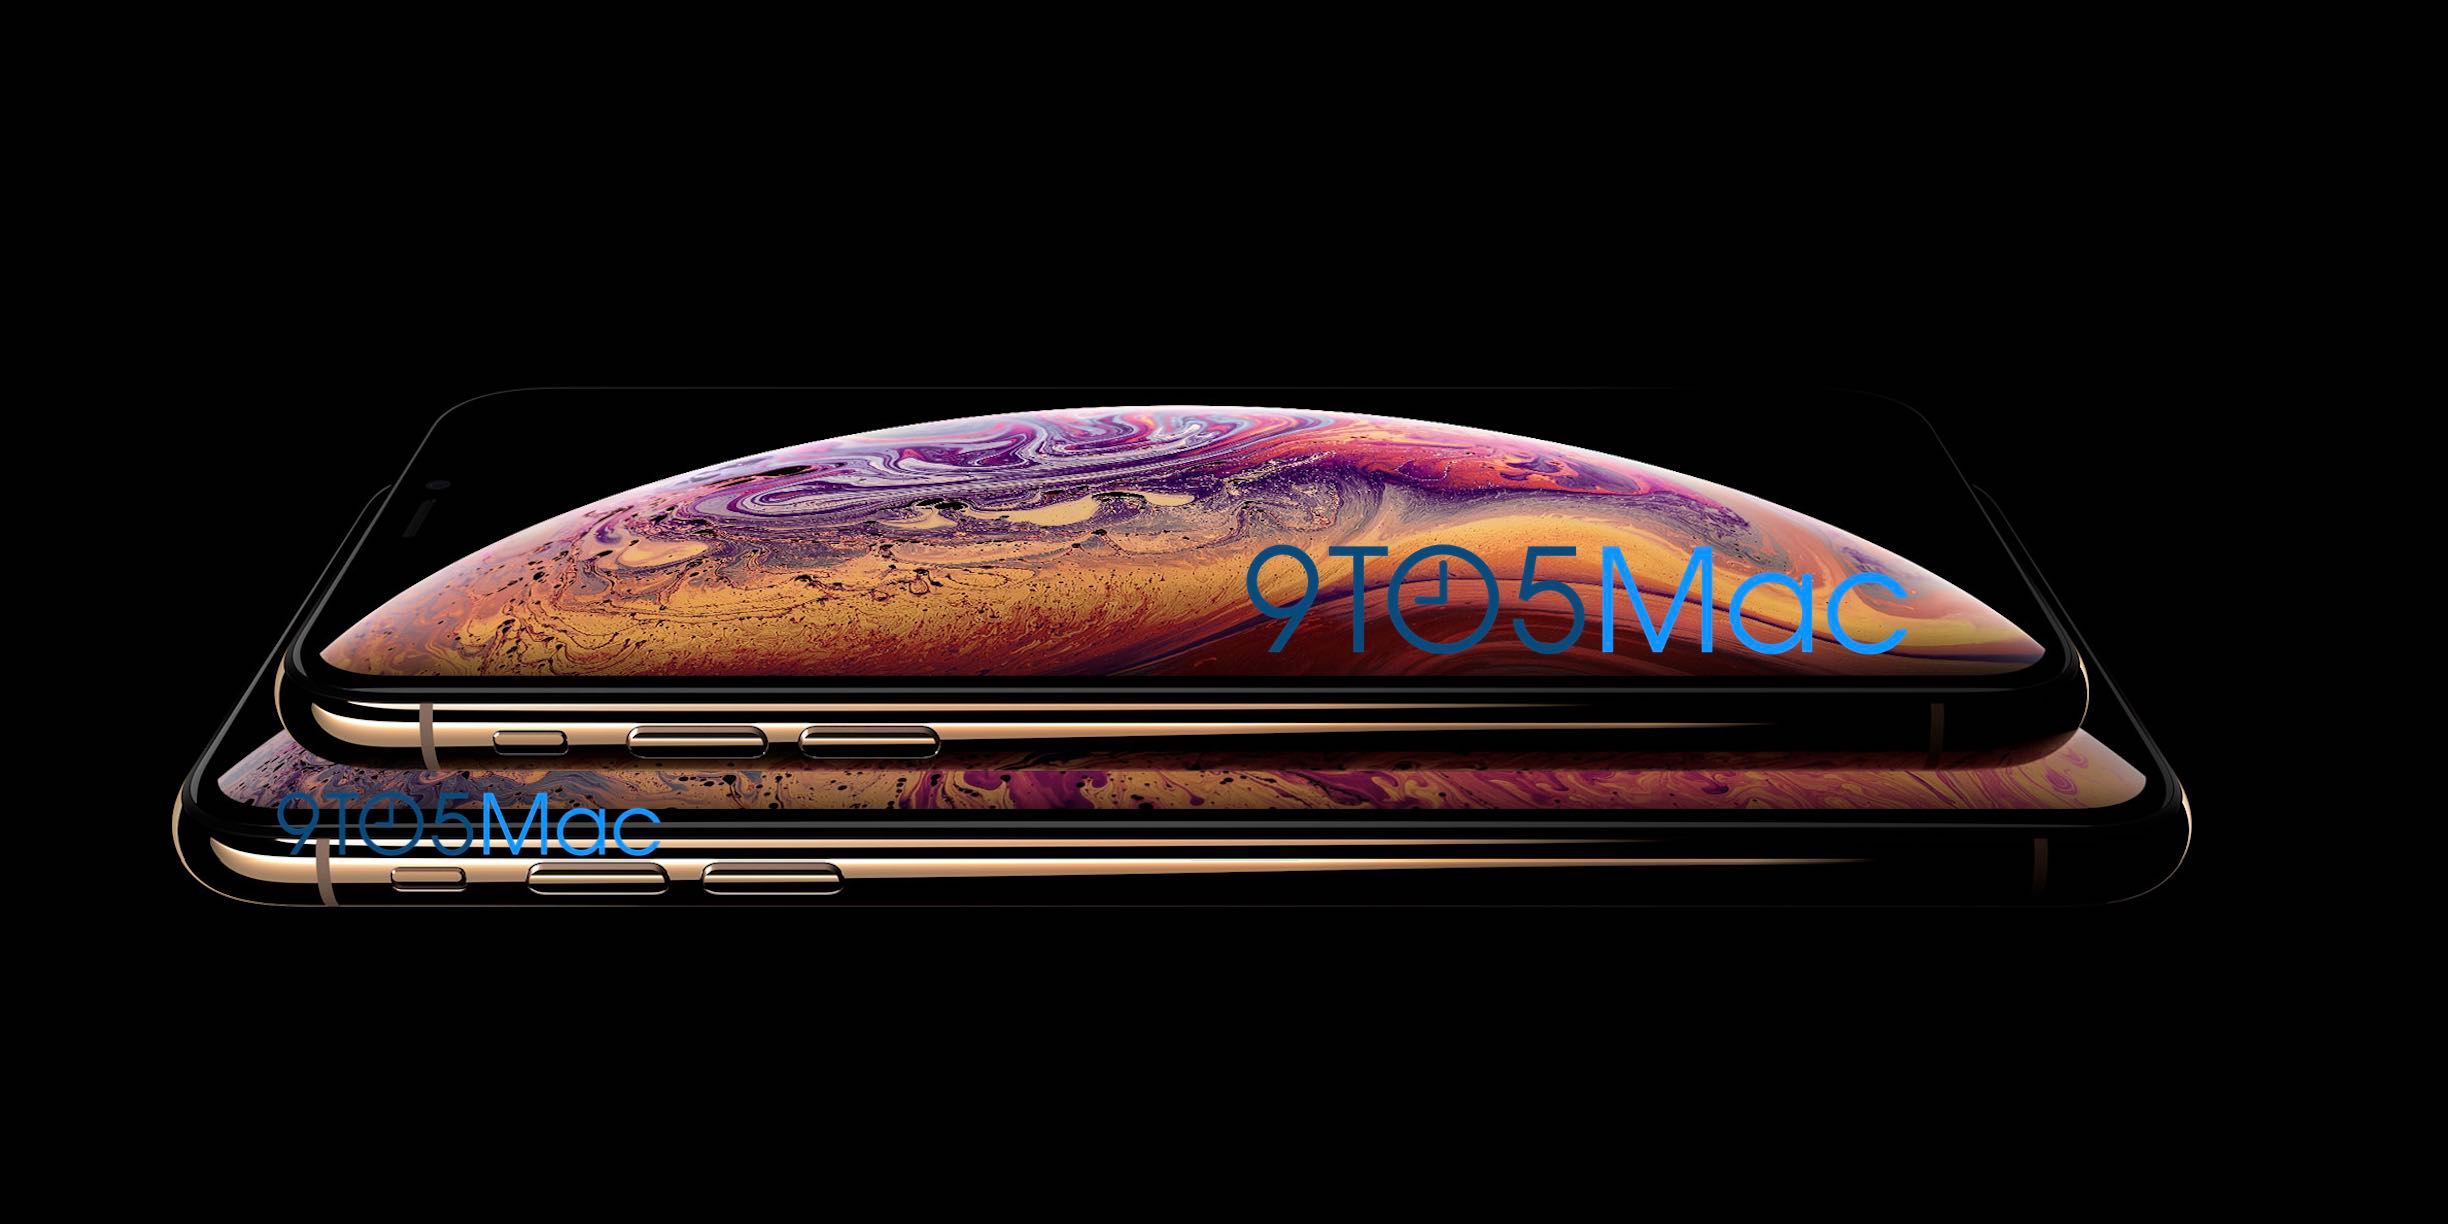 หลุดภาพเครื่อง iPhone XS มีรุ่นจอใหญ่ 6.5 นิ้ว และสีทองแบบใหม่